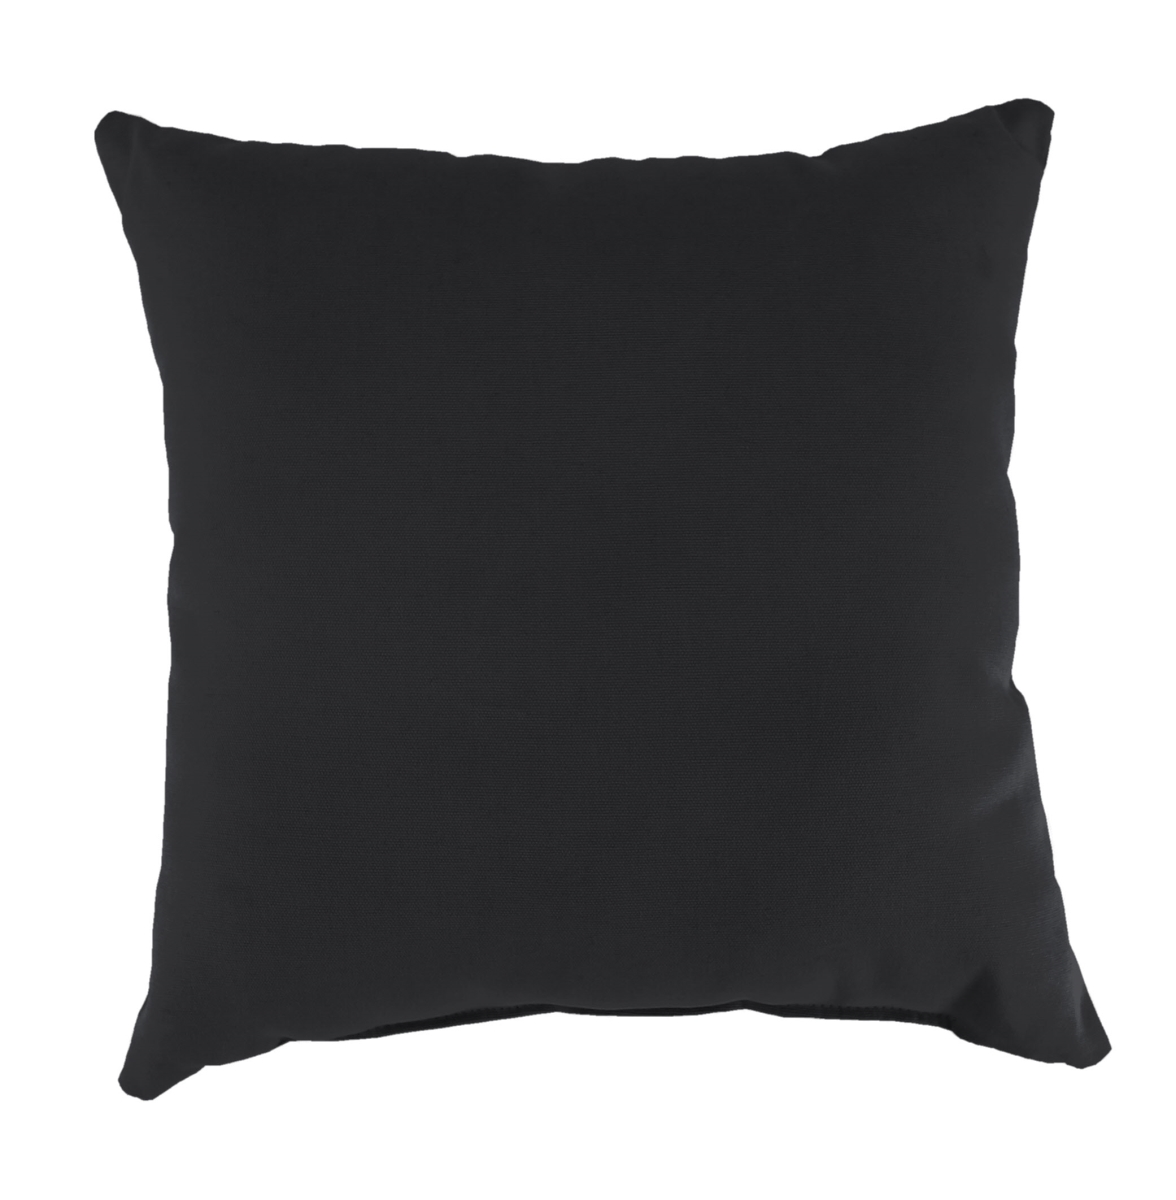 9950pk1-273c 18 X 18 In. Outdoor Pillow In Black